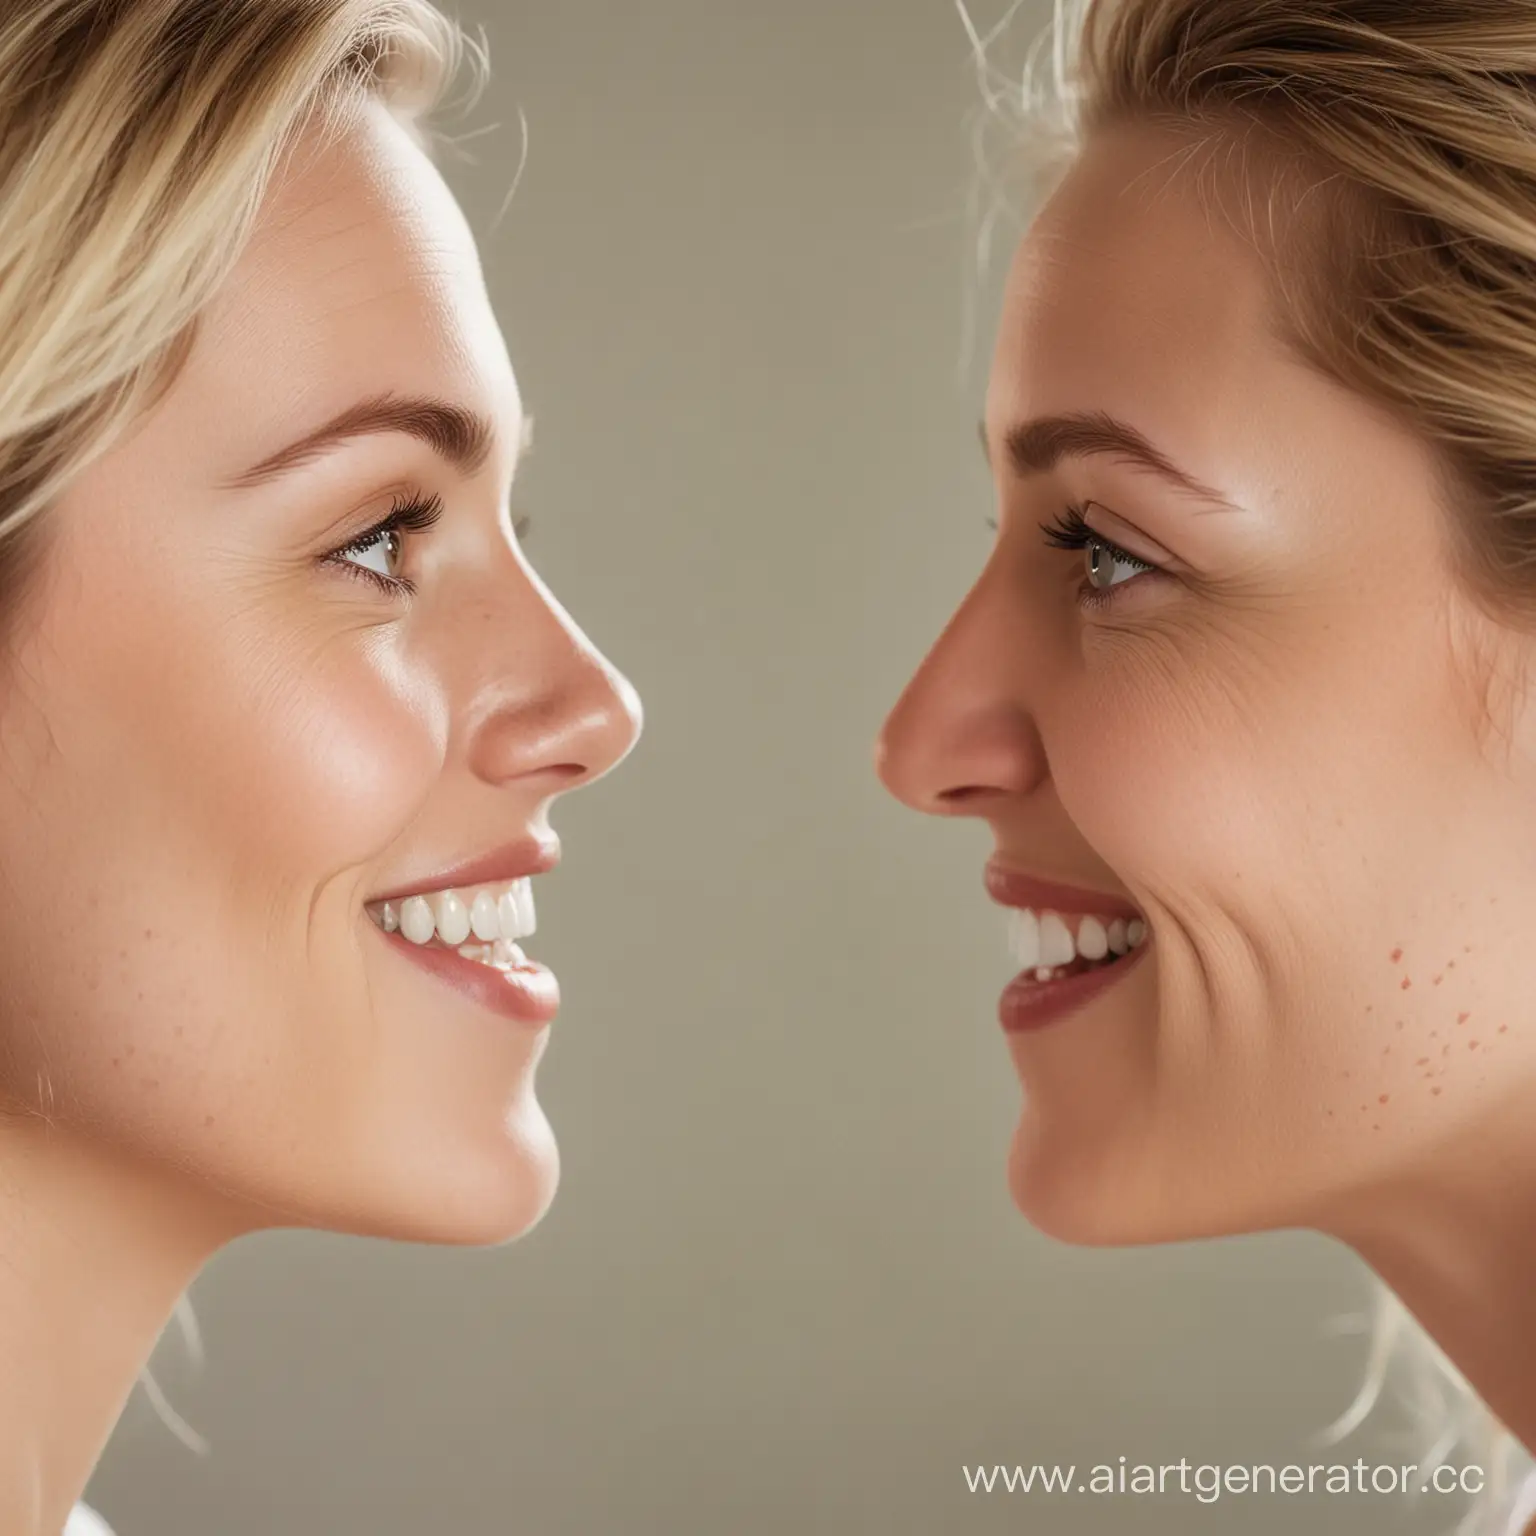 CloseUp-Portrait-of-Two-Smiling-Caucasian-Women-Making-Eye-Contact